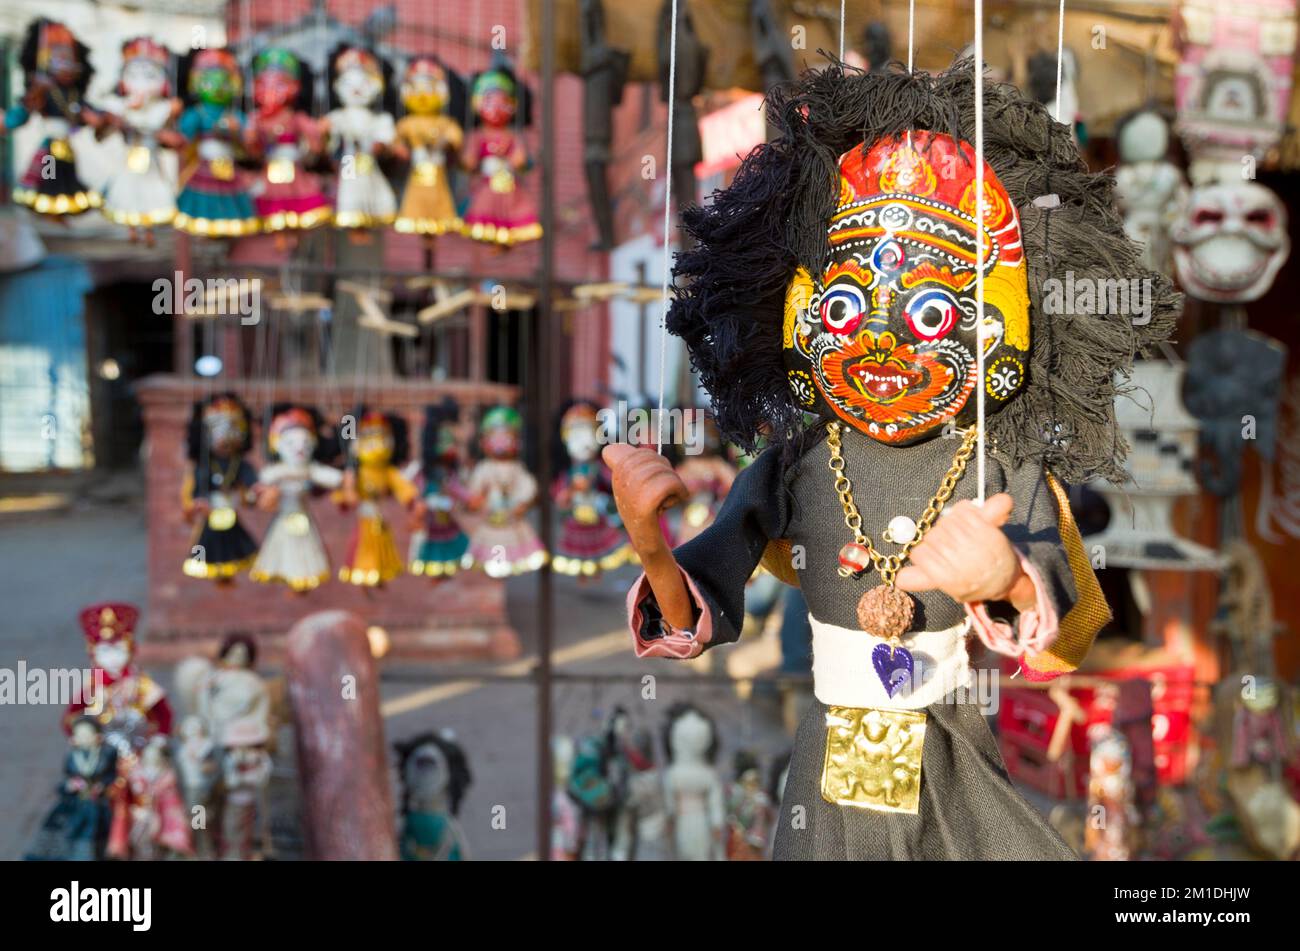 Souvenir puppets for sale Stock Photo